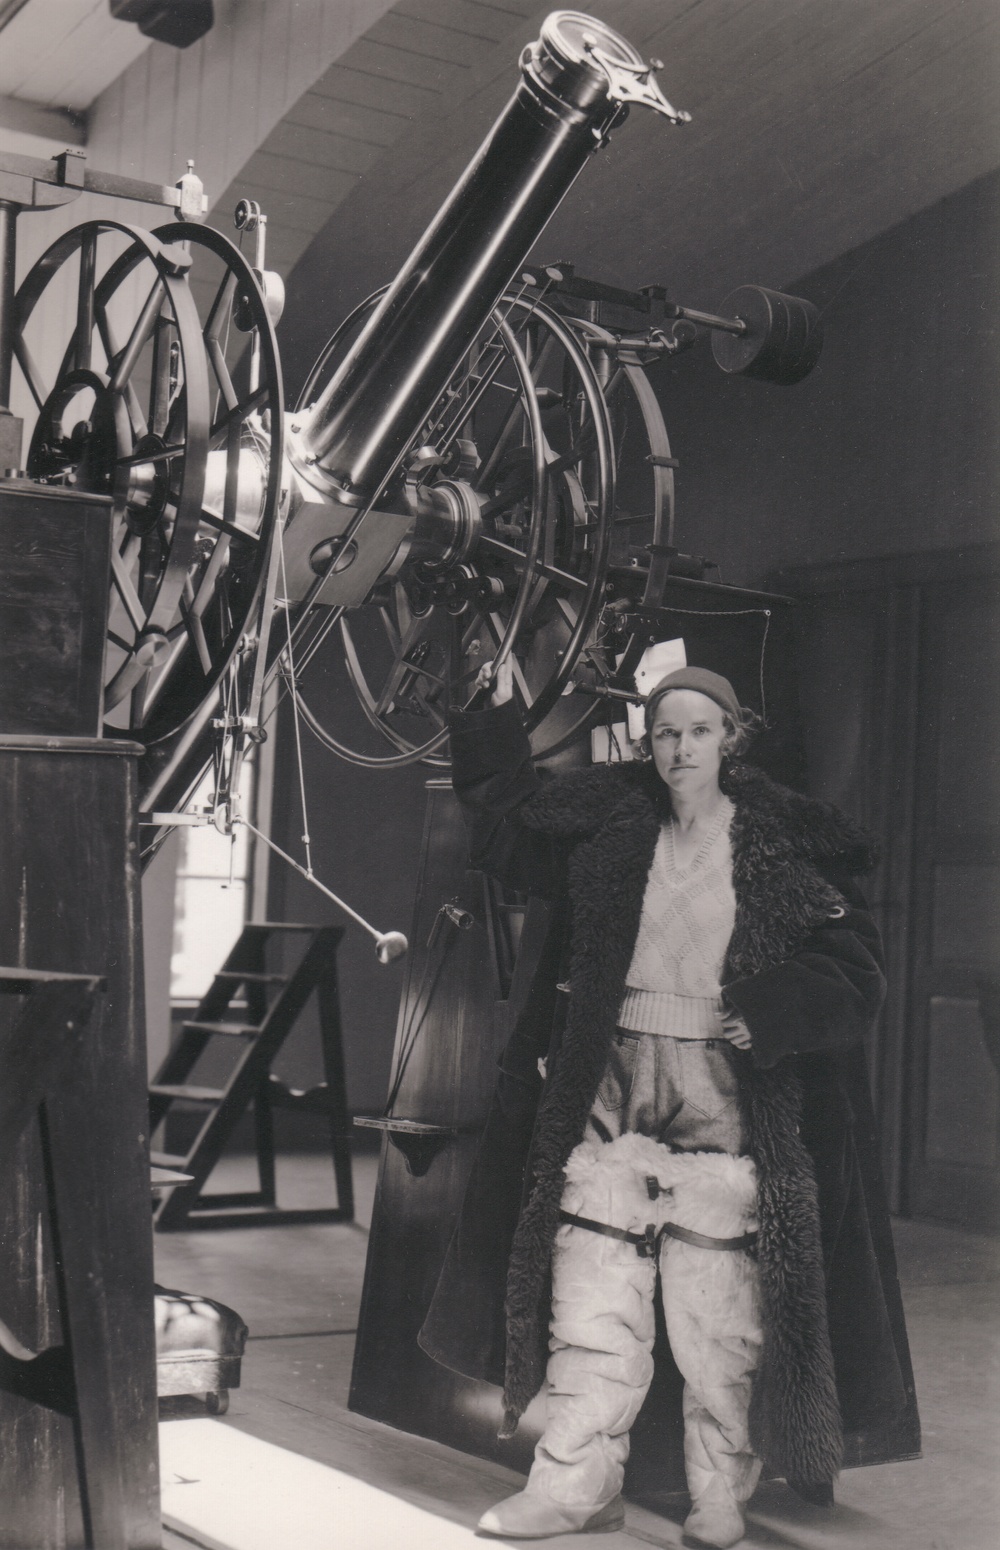 Frida Palmér var Sveriges första kvinnliga filosofie doktor i astronomi, verksam i Lund, som av ekonomiska skäl tvingades avsluta sin lovande forskarkarriär. På bilden står hon vid meridiancirkeln på Lunds observatorium omkring 1929. Den tjocka rocken och stövlarna är hennes speciella arbetsklädsel som behövdes för skydd mot nattkylan i observatoriet. Foto: okänd fotograf, Fysiska institutionen vid Lunds universitet. 